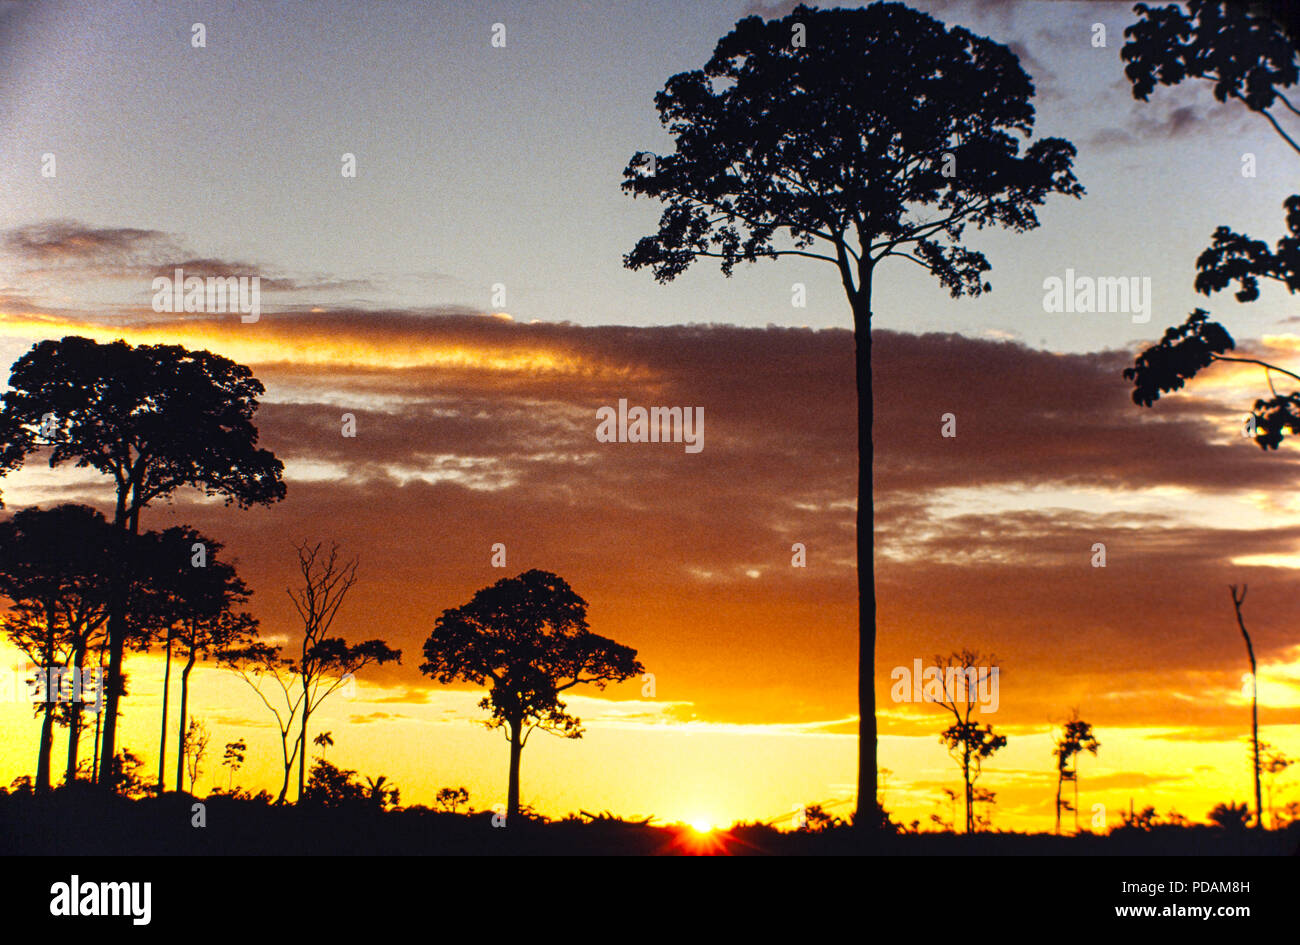 L'arbre isolé Brésil condamné à mort après le dégagement de la forêt amazonienne, près de la ville de Rio Branco, Acre, Brésil de l'État - la déforestation en Amazonie Banque D'Images